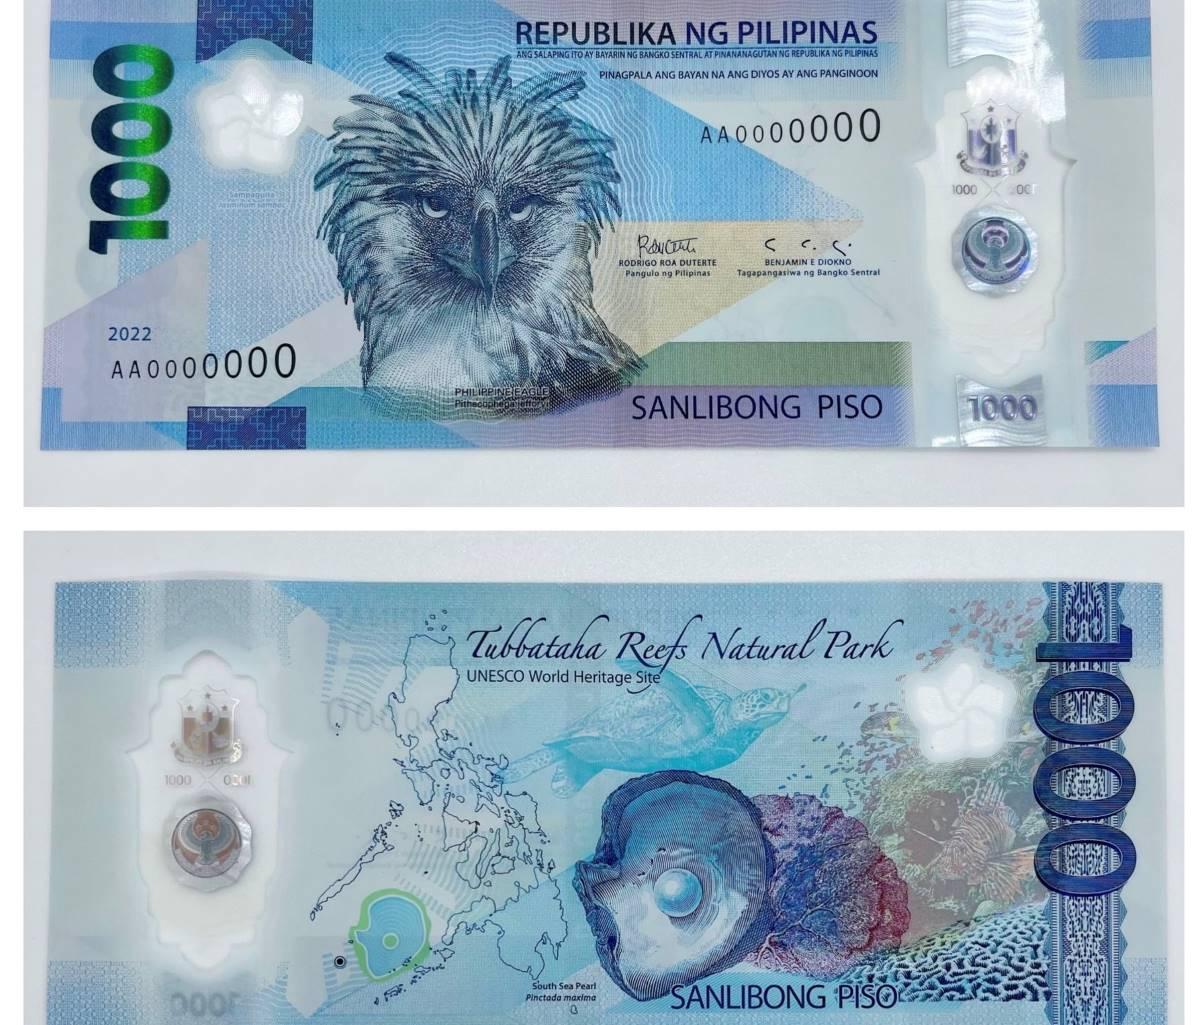 BSP merilis desain baru uang pecahan P1.000 GMA News Online